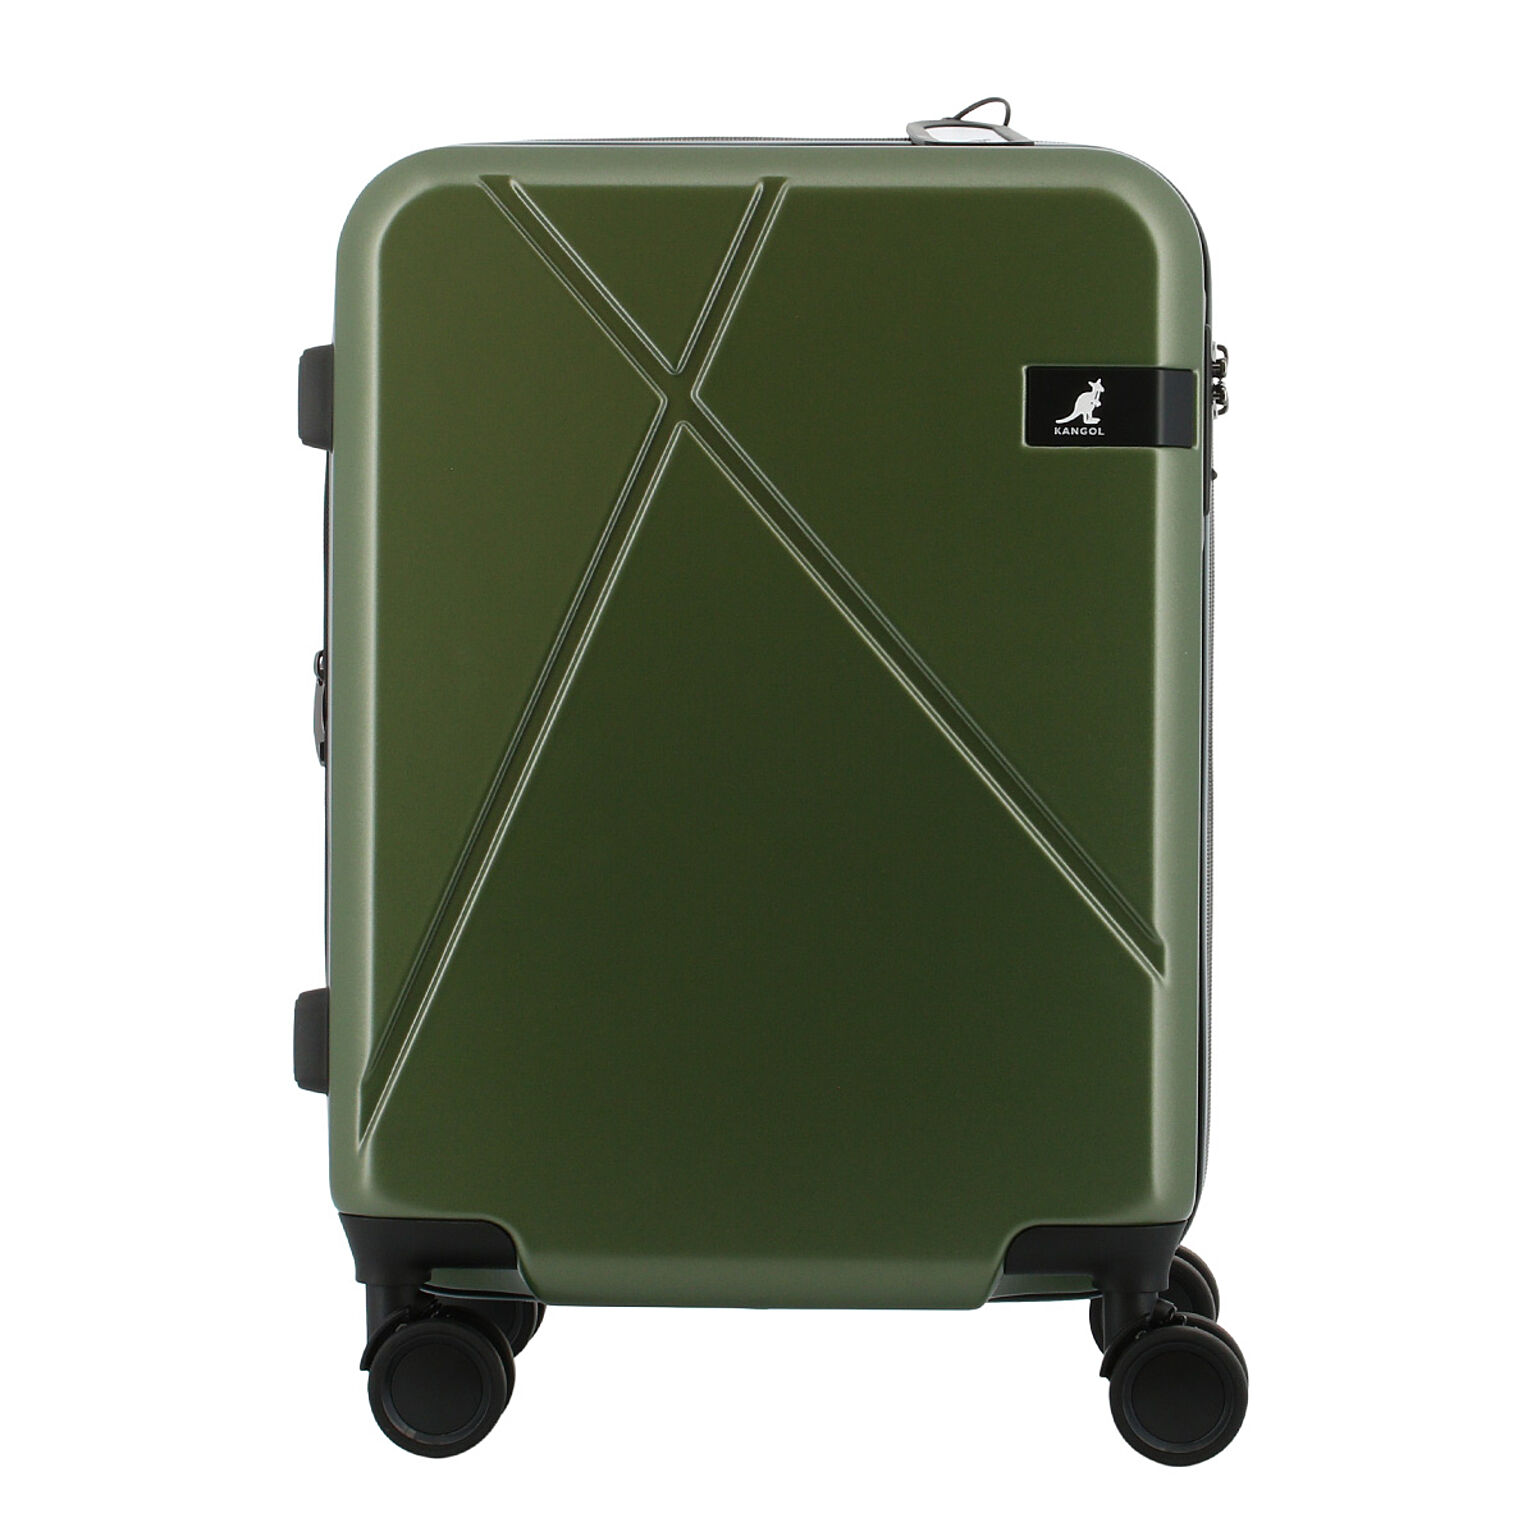 カンゴール スーツケース 機内持ち込み 47cm 38L 3.6kg クロスエイトII 250-5710 KANGOL キャリーケース キャリーバッグ エキスパンダブル 拡張